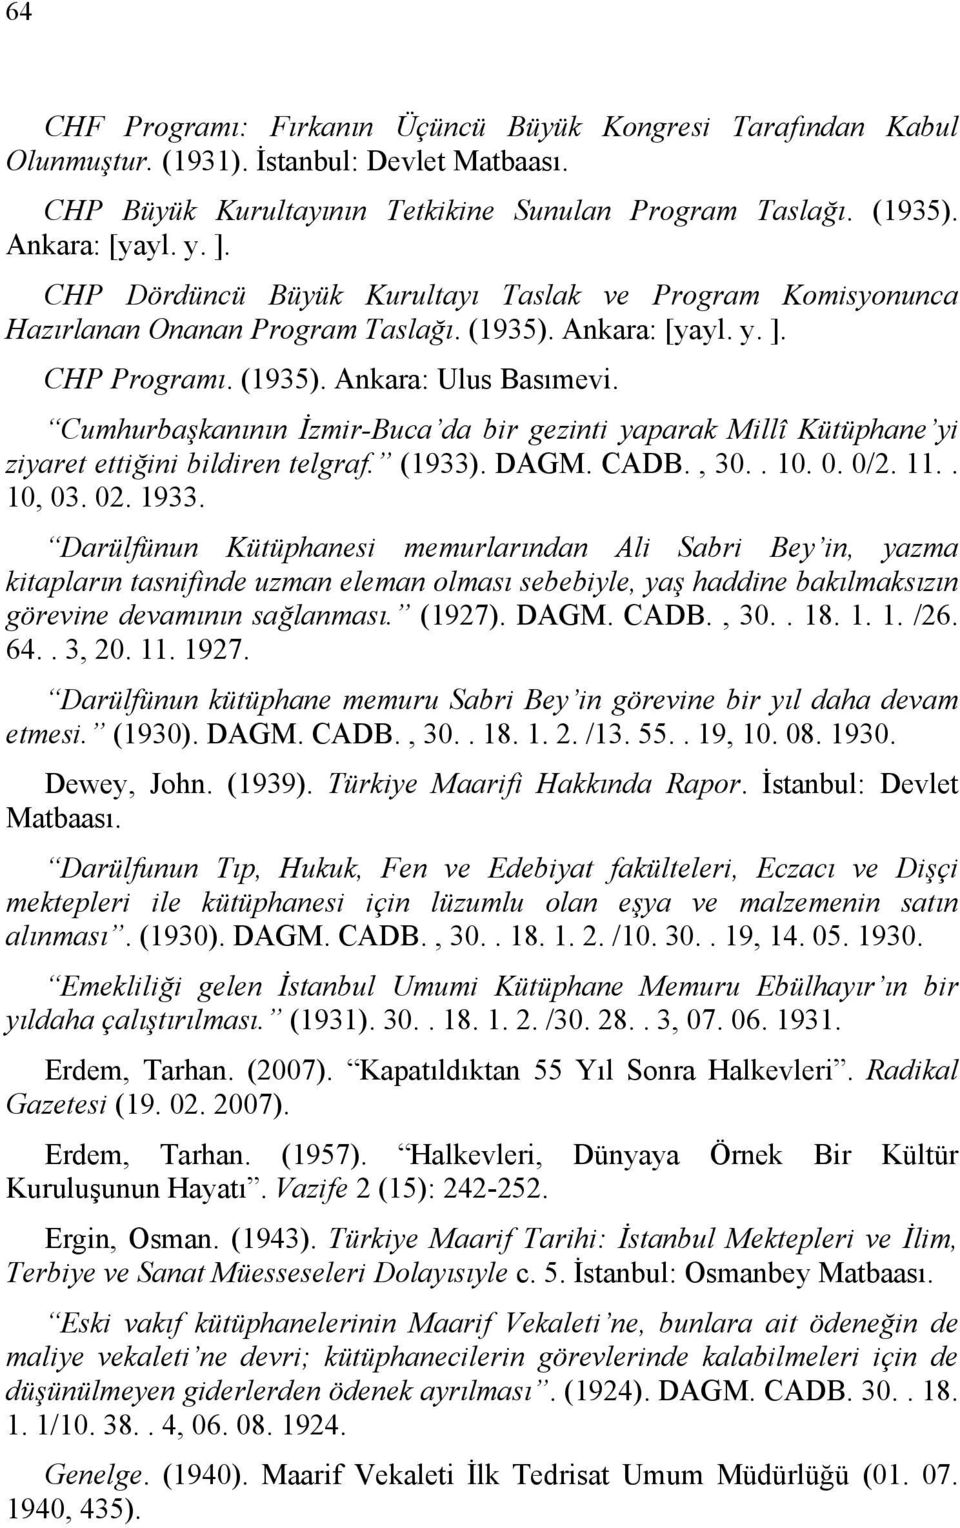 Cumhurbaşkanının İzmir-Buca da bir gezinti yaparak Millî Kütüphane yi ziyaret ettiğini bildiren telgraf. (1933). DAGM. CADB., 30.. 10. 0. 0/2. 11.. 10, 03. 02. 1933.